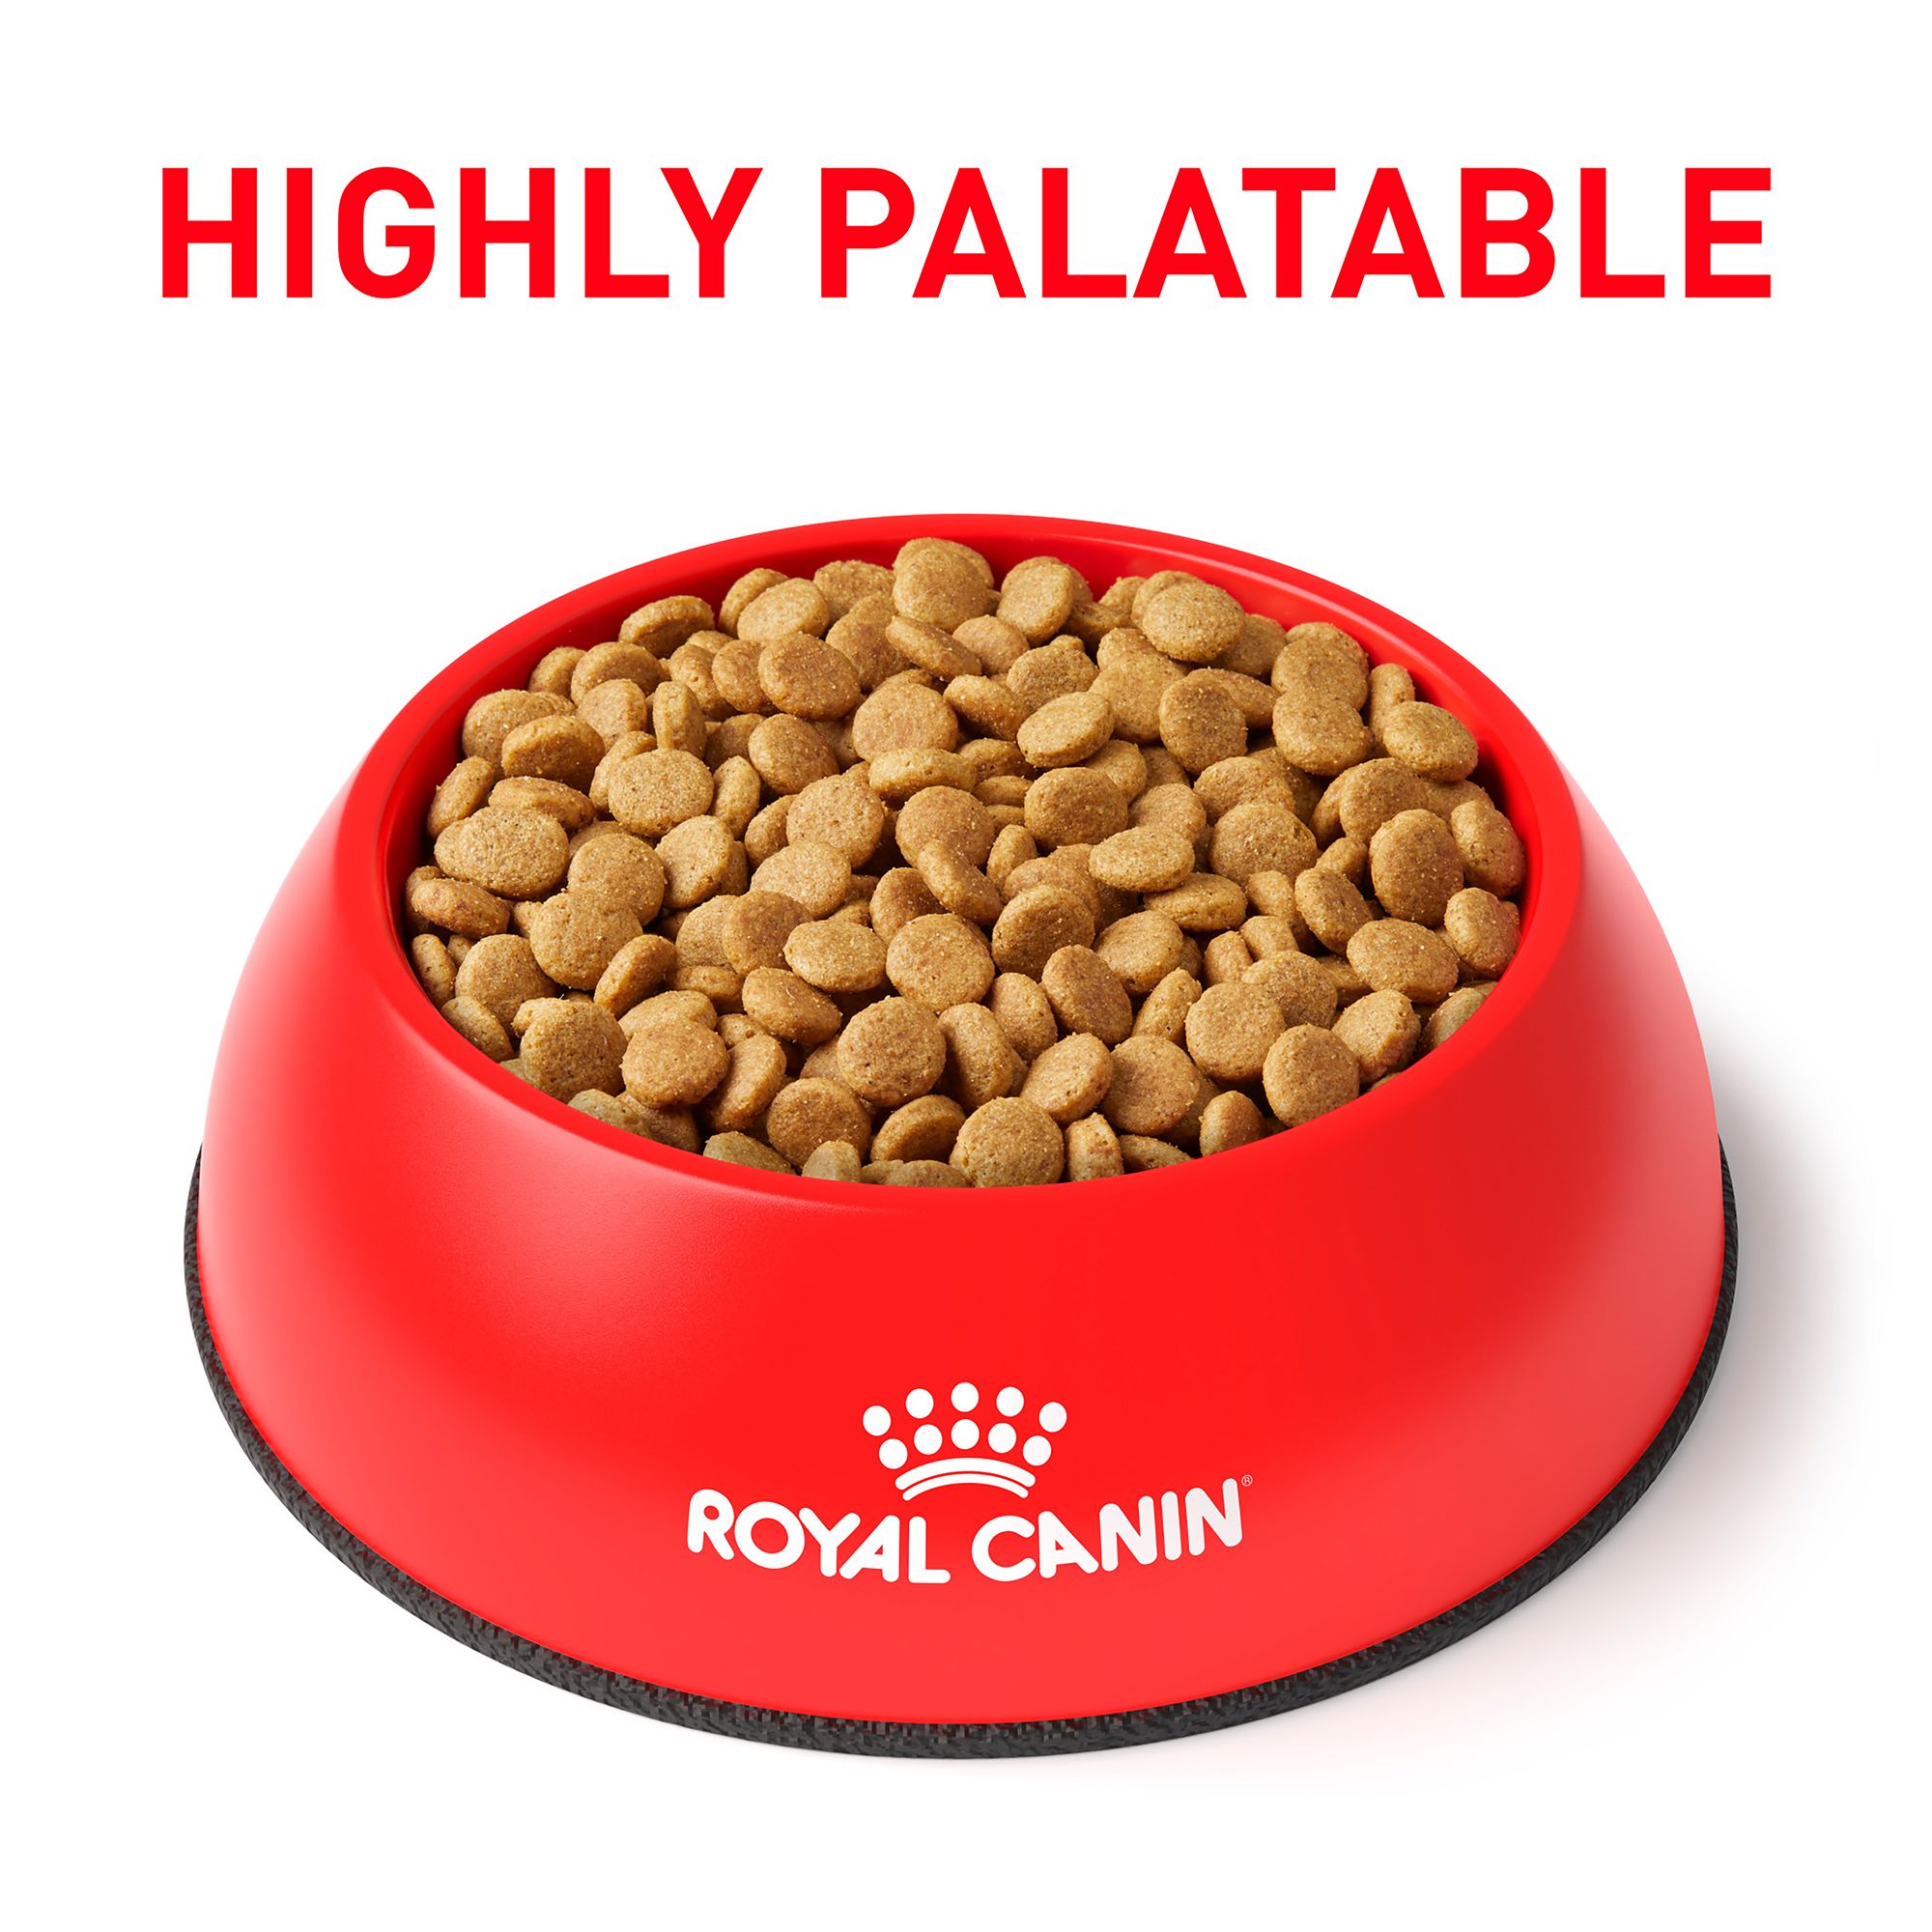 royal canin hydrolyzed protein small dog